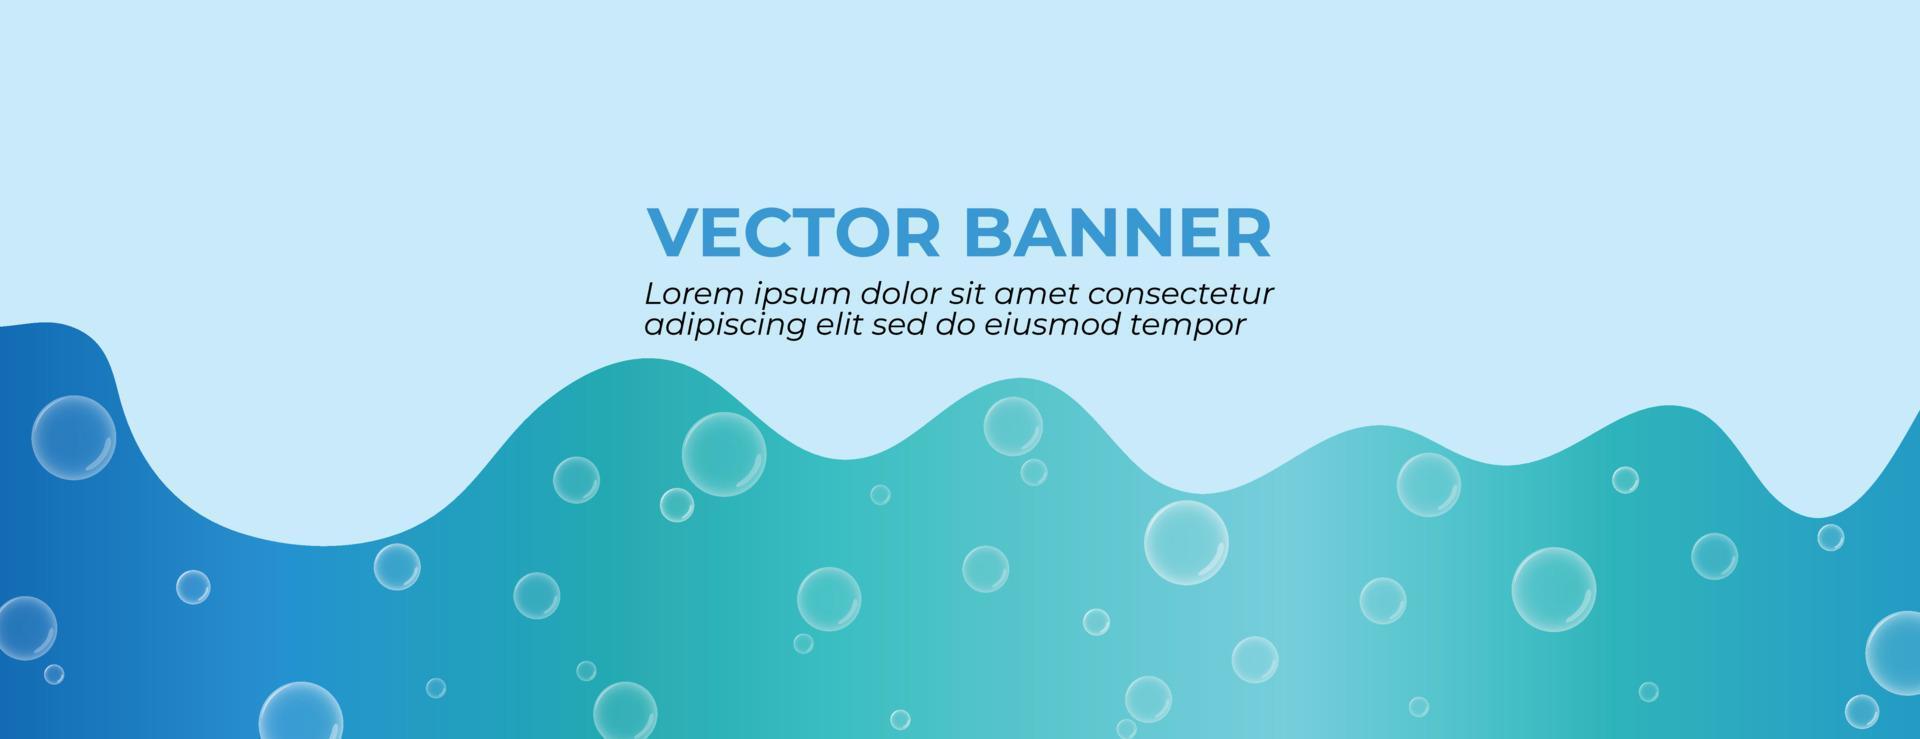 diseño de banner vectorial que fluye de onda azul con burbujas flotando vector